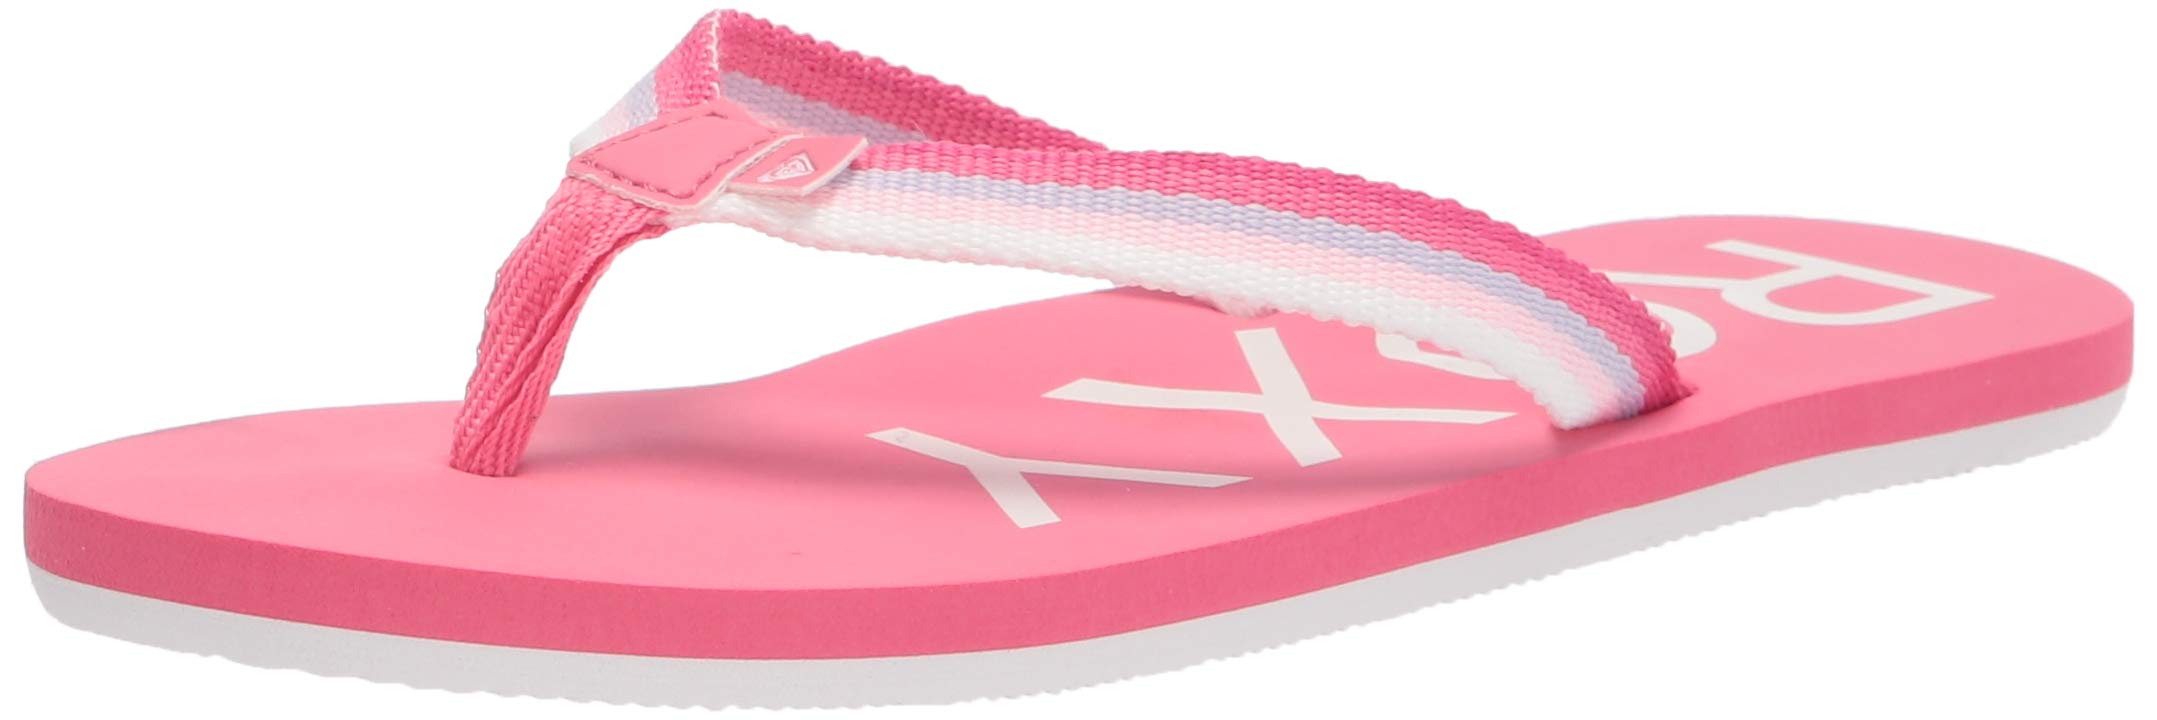 Roxy Girls Rg Colbee Flip Flop Sandal, Pink 211, 2 Little Kid